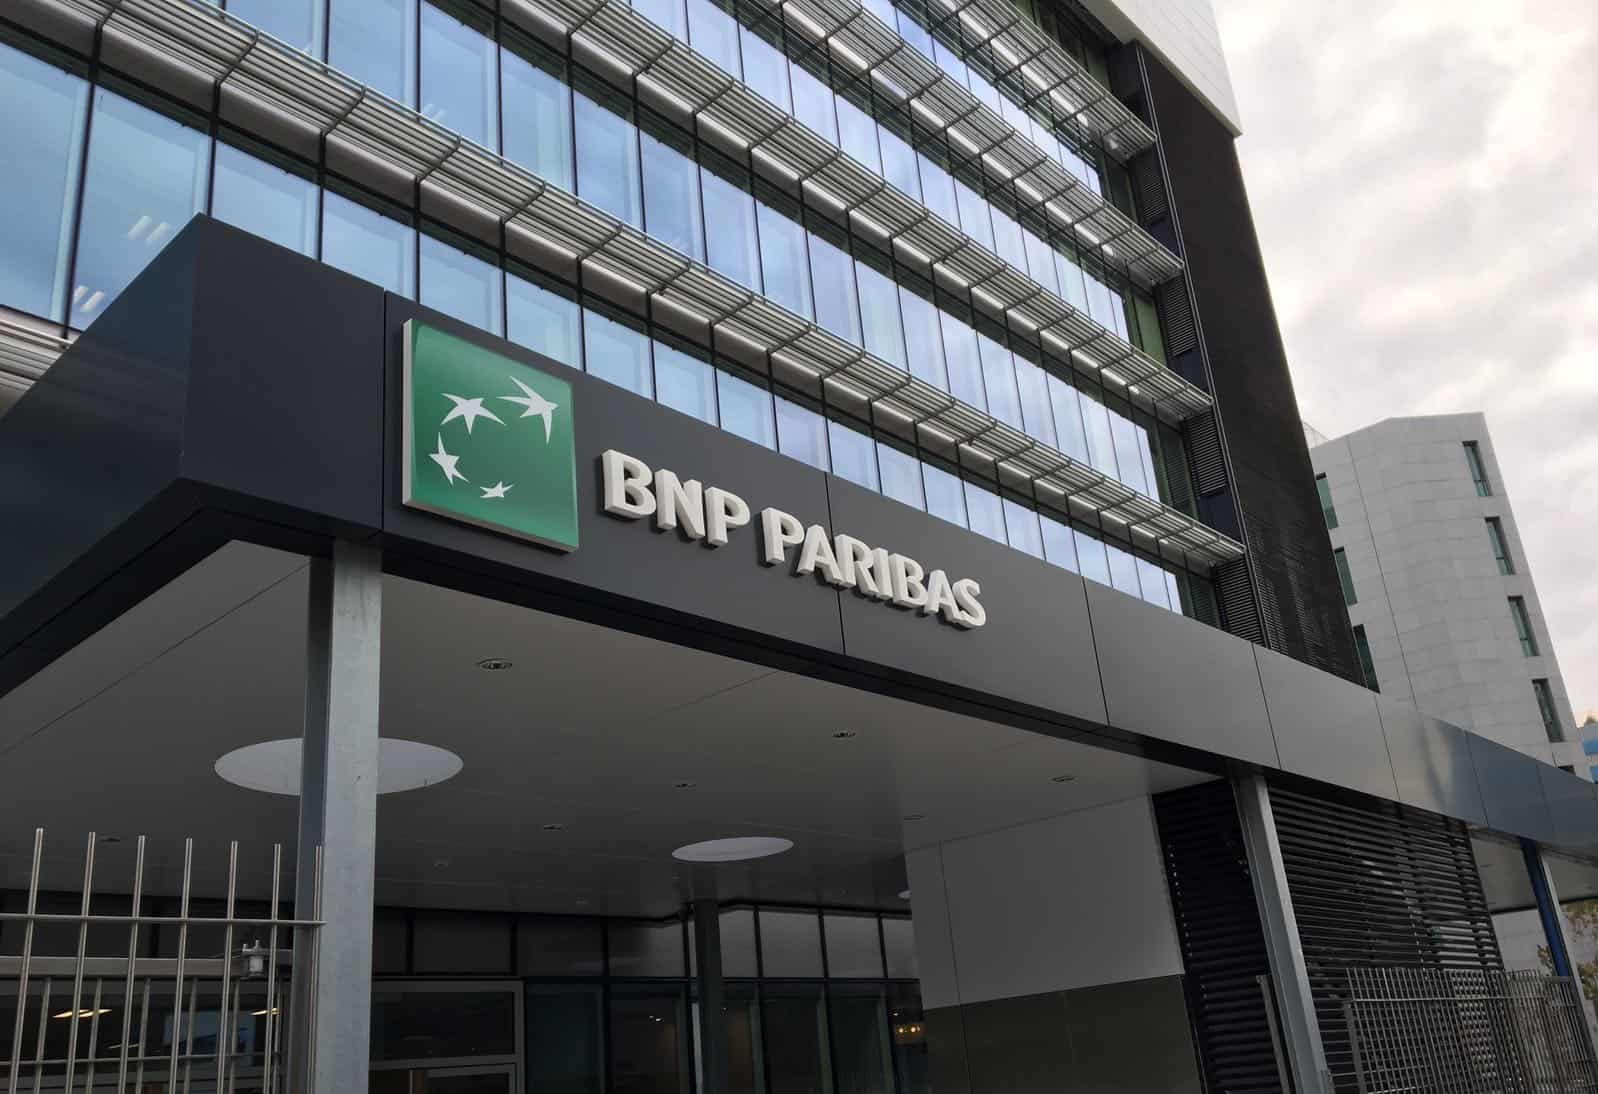 BNP Paribas: о банке, условиях работы, отбора сотрудников, тестах и собеседовании в 2020 году